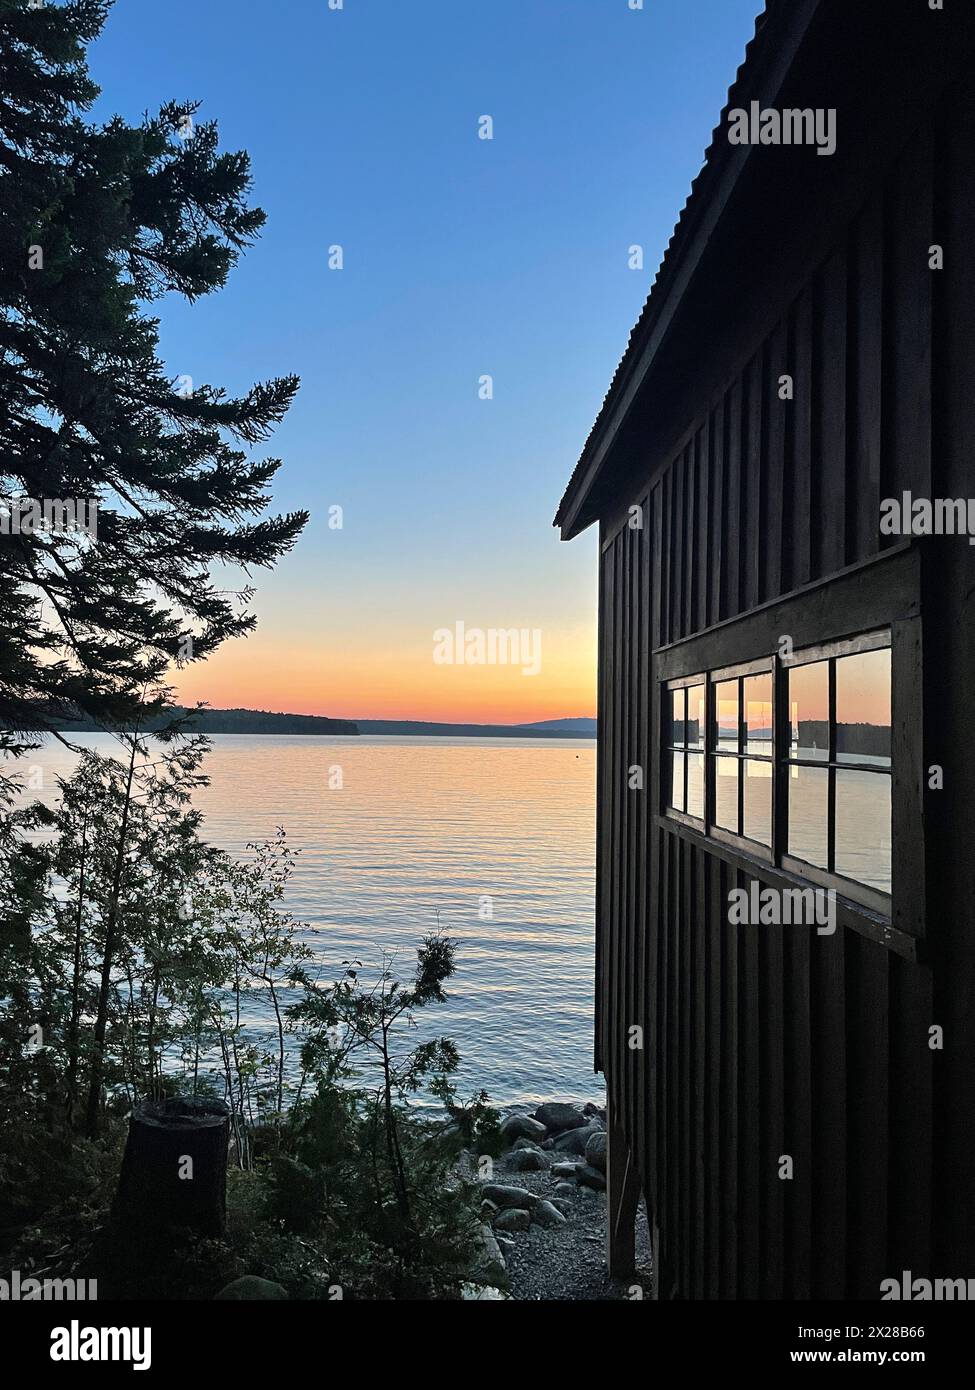 Lake sunset with boathouse window reflection Stock Photo